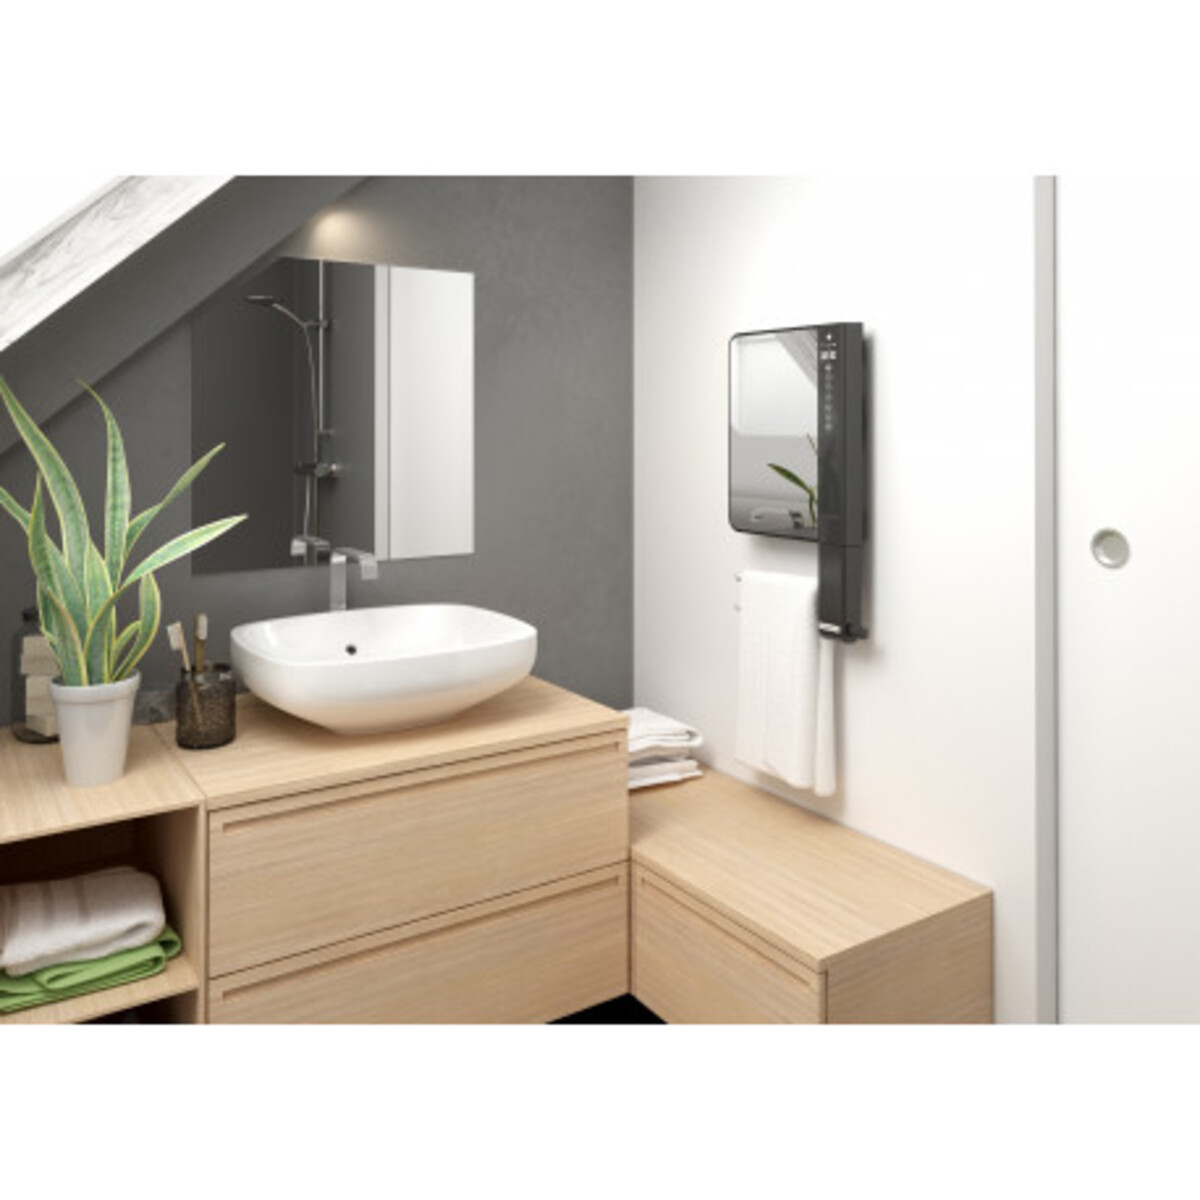 Illico 3 - radiateur thermor salle de bain - thermor miroir avec barres